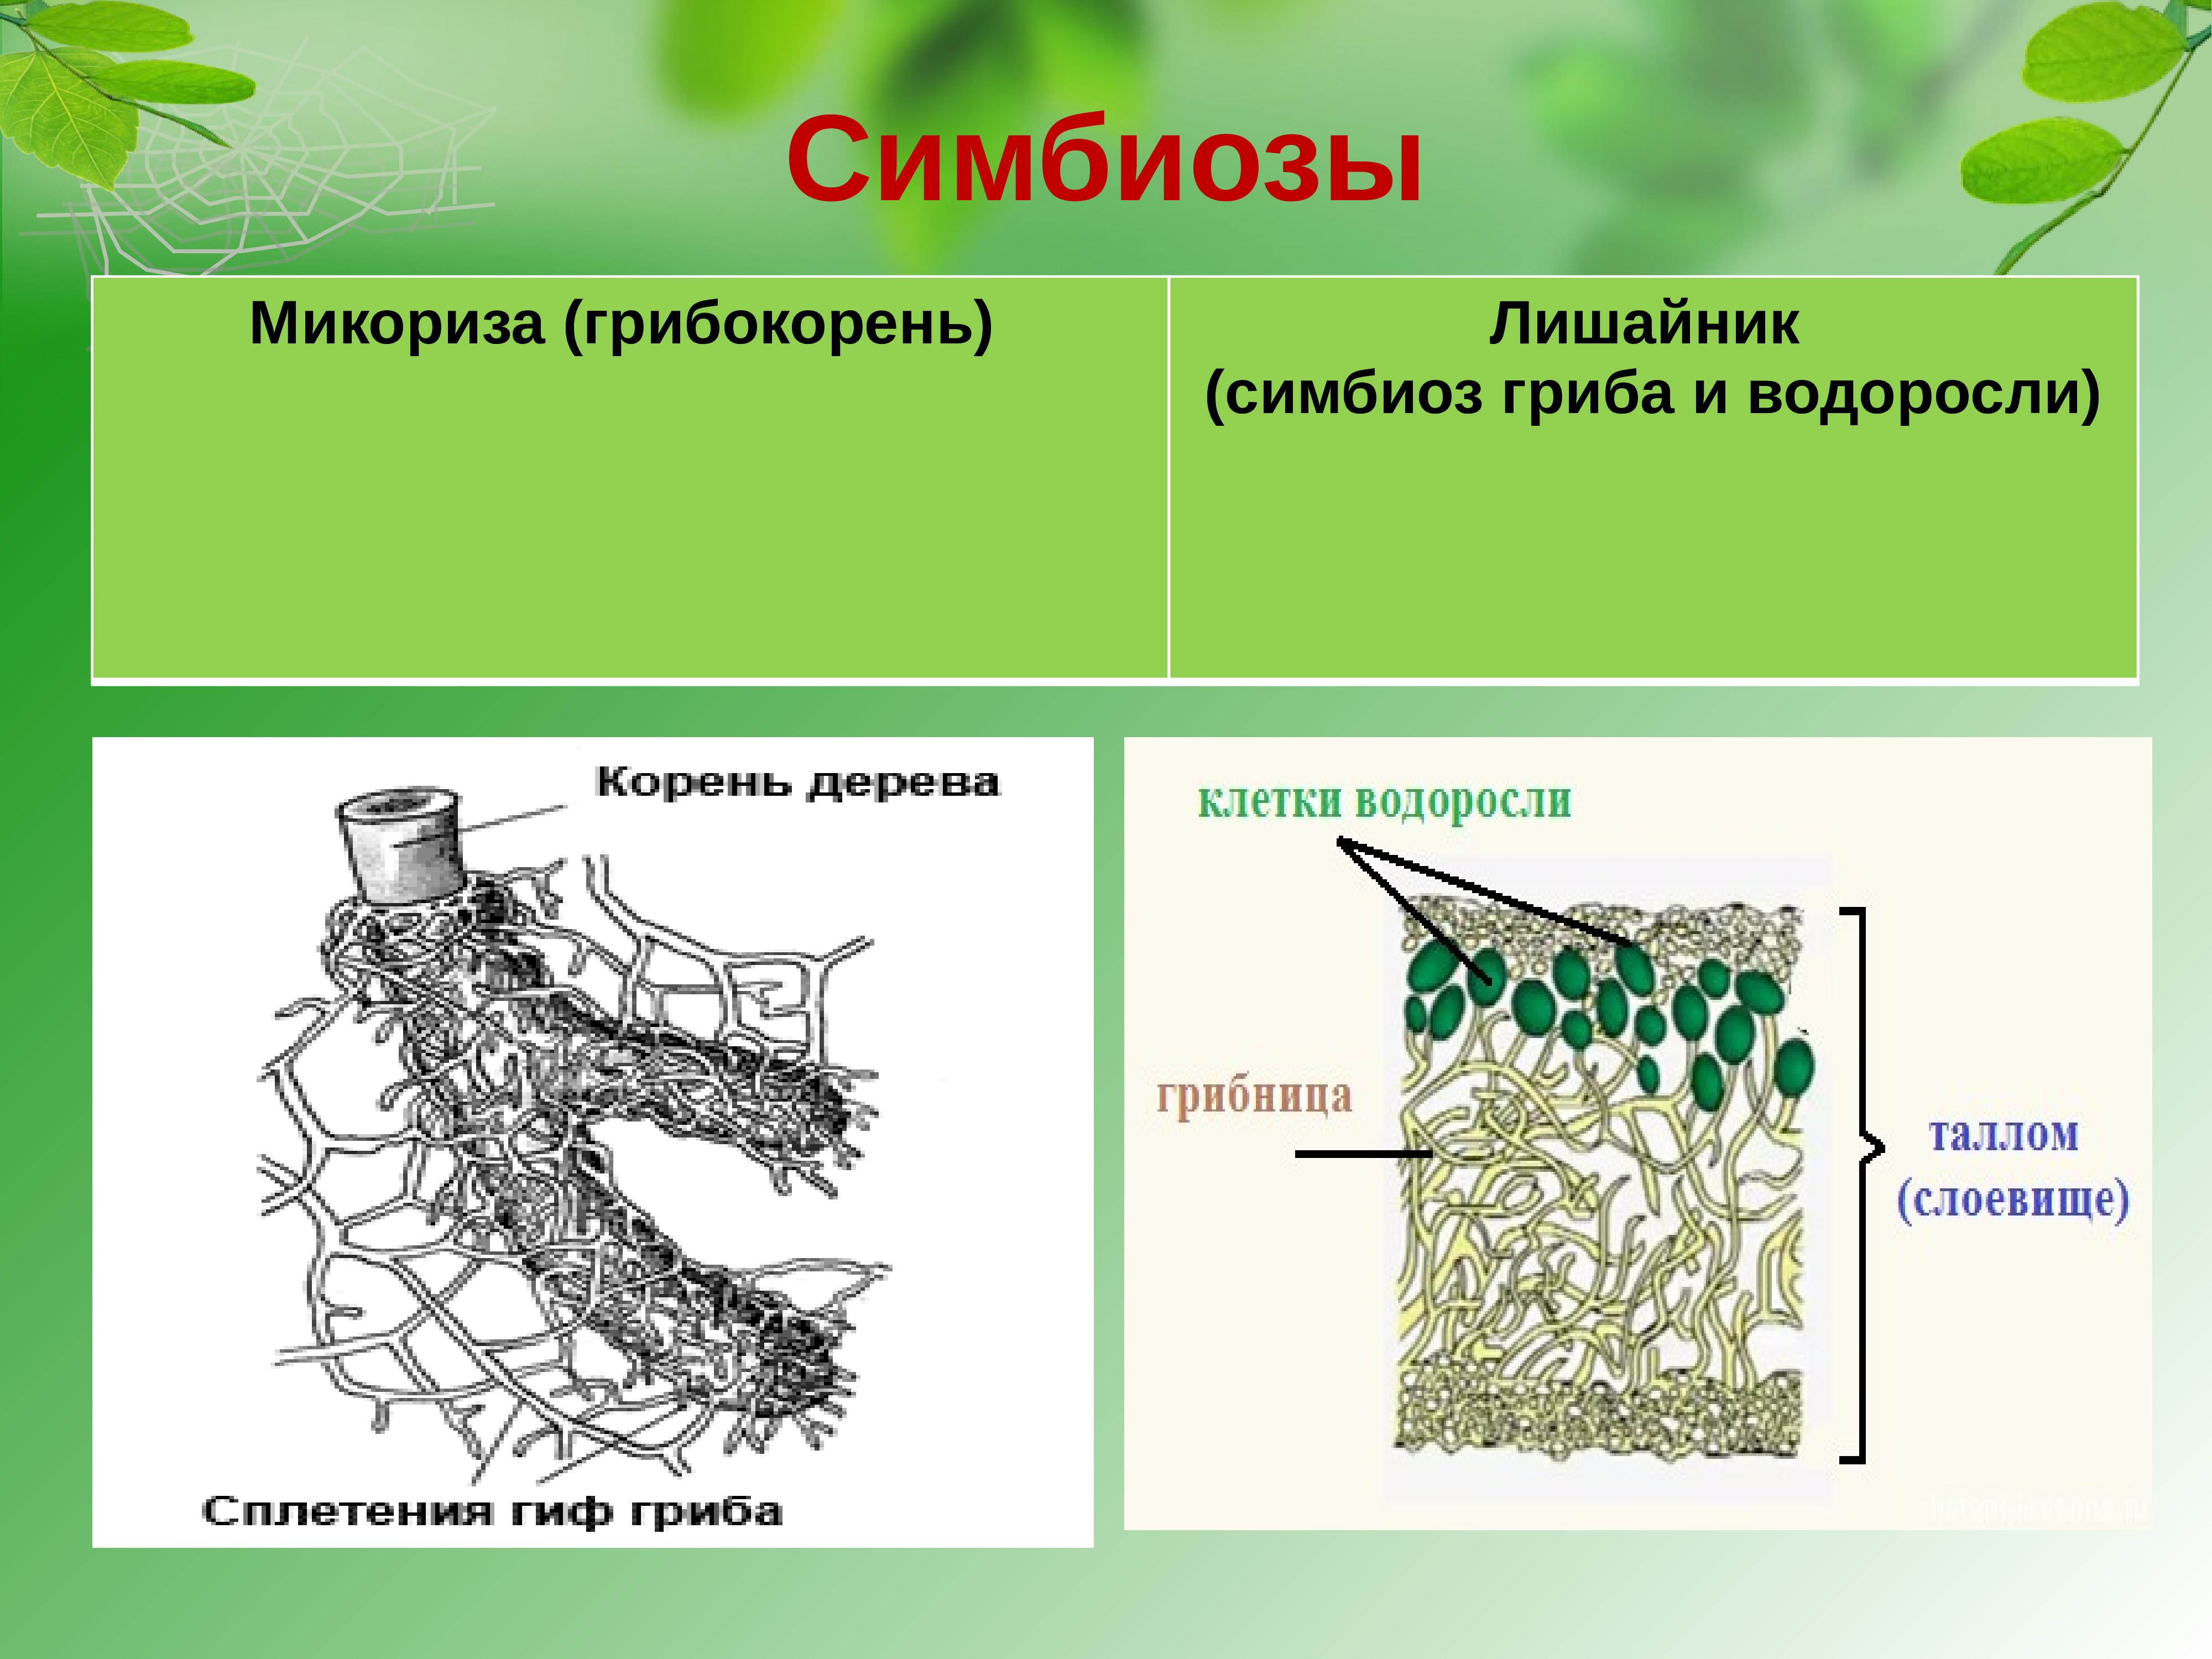 Функция водоросли в лишайнике